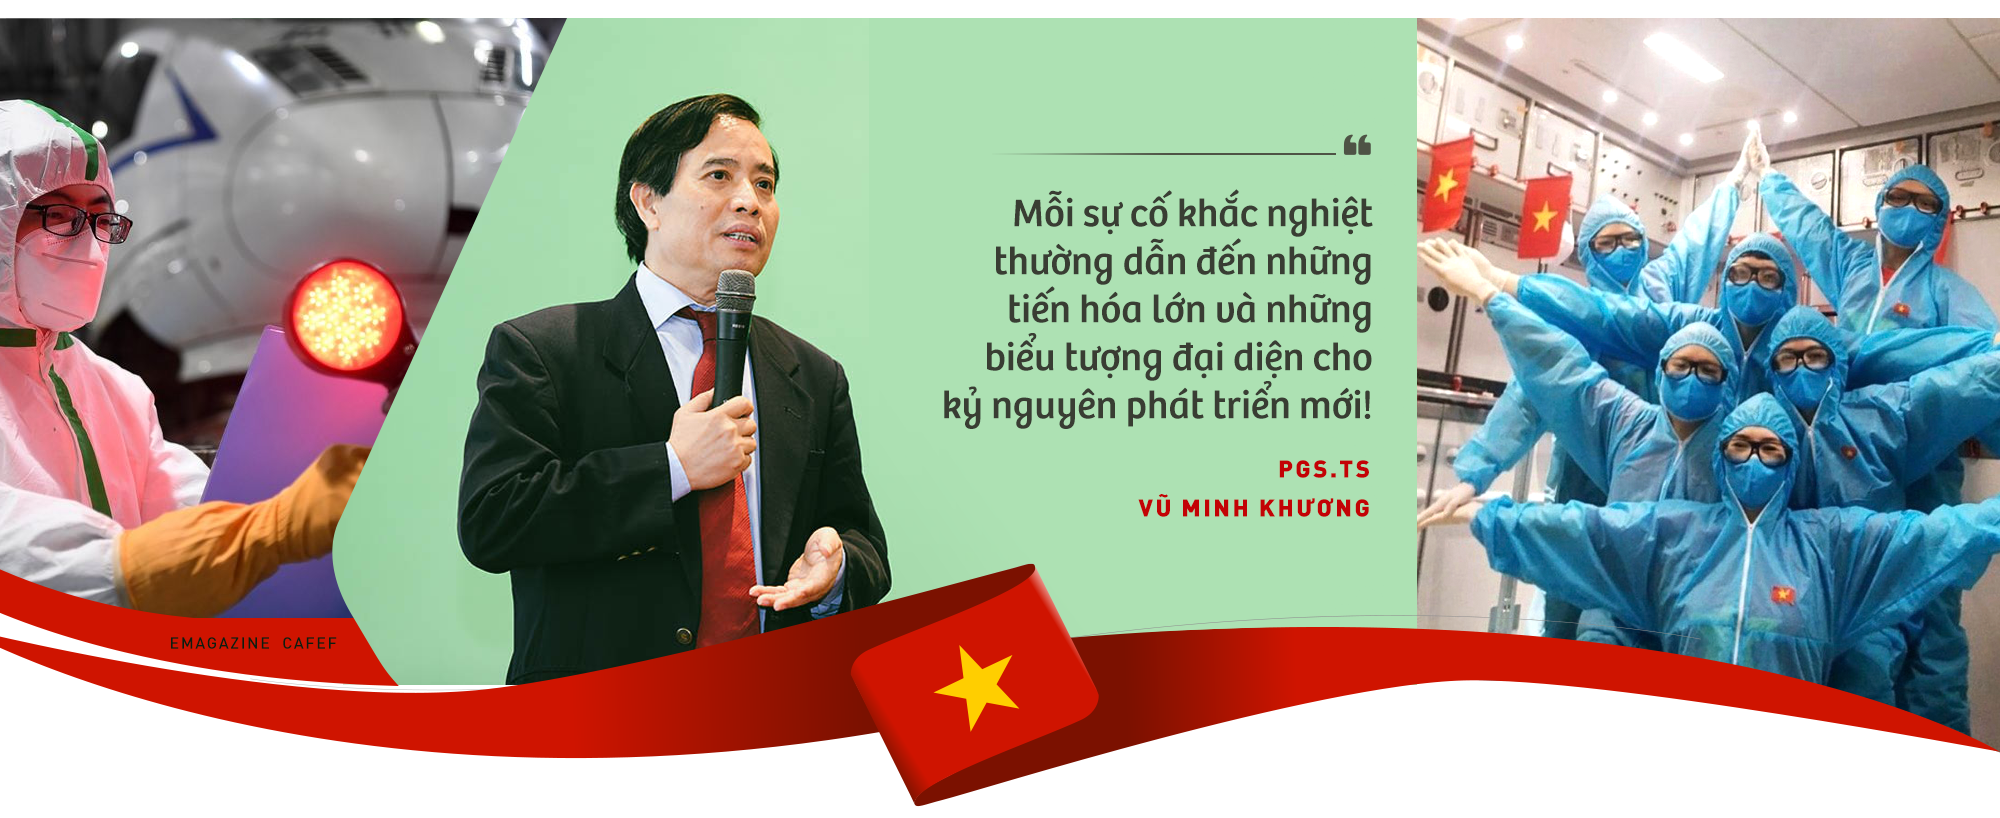 PGS. TS Vũ Minh Khương: Việt Nam đang đứng trước triển vọng lớn làm thế giới kinh ngạc trong những năm tới! - Ảnh 8.